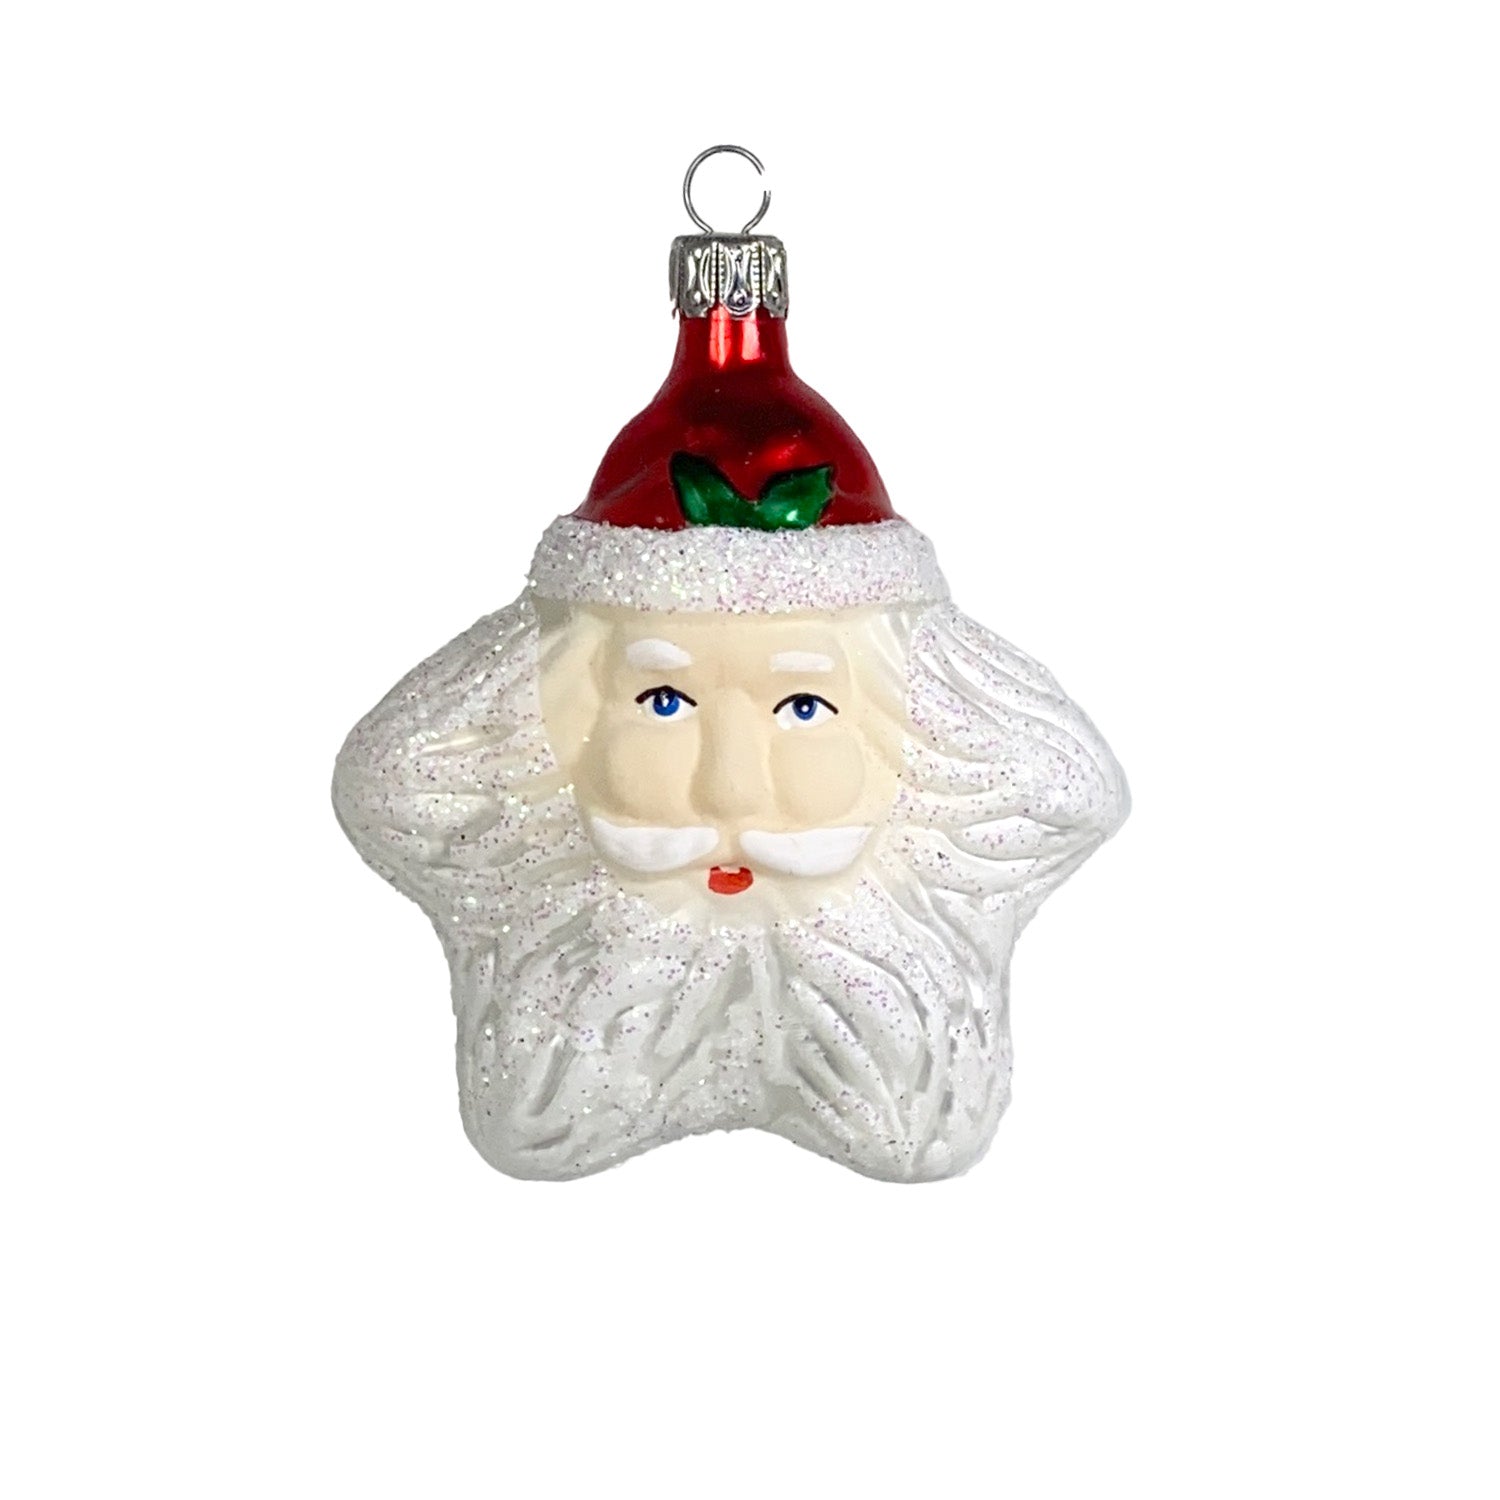 Weihnachtsmannkopf mit Gesicht in Sternform Christbaumkugel aus Glas